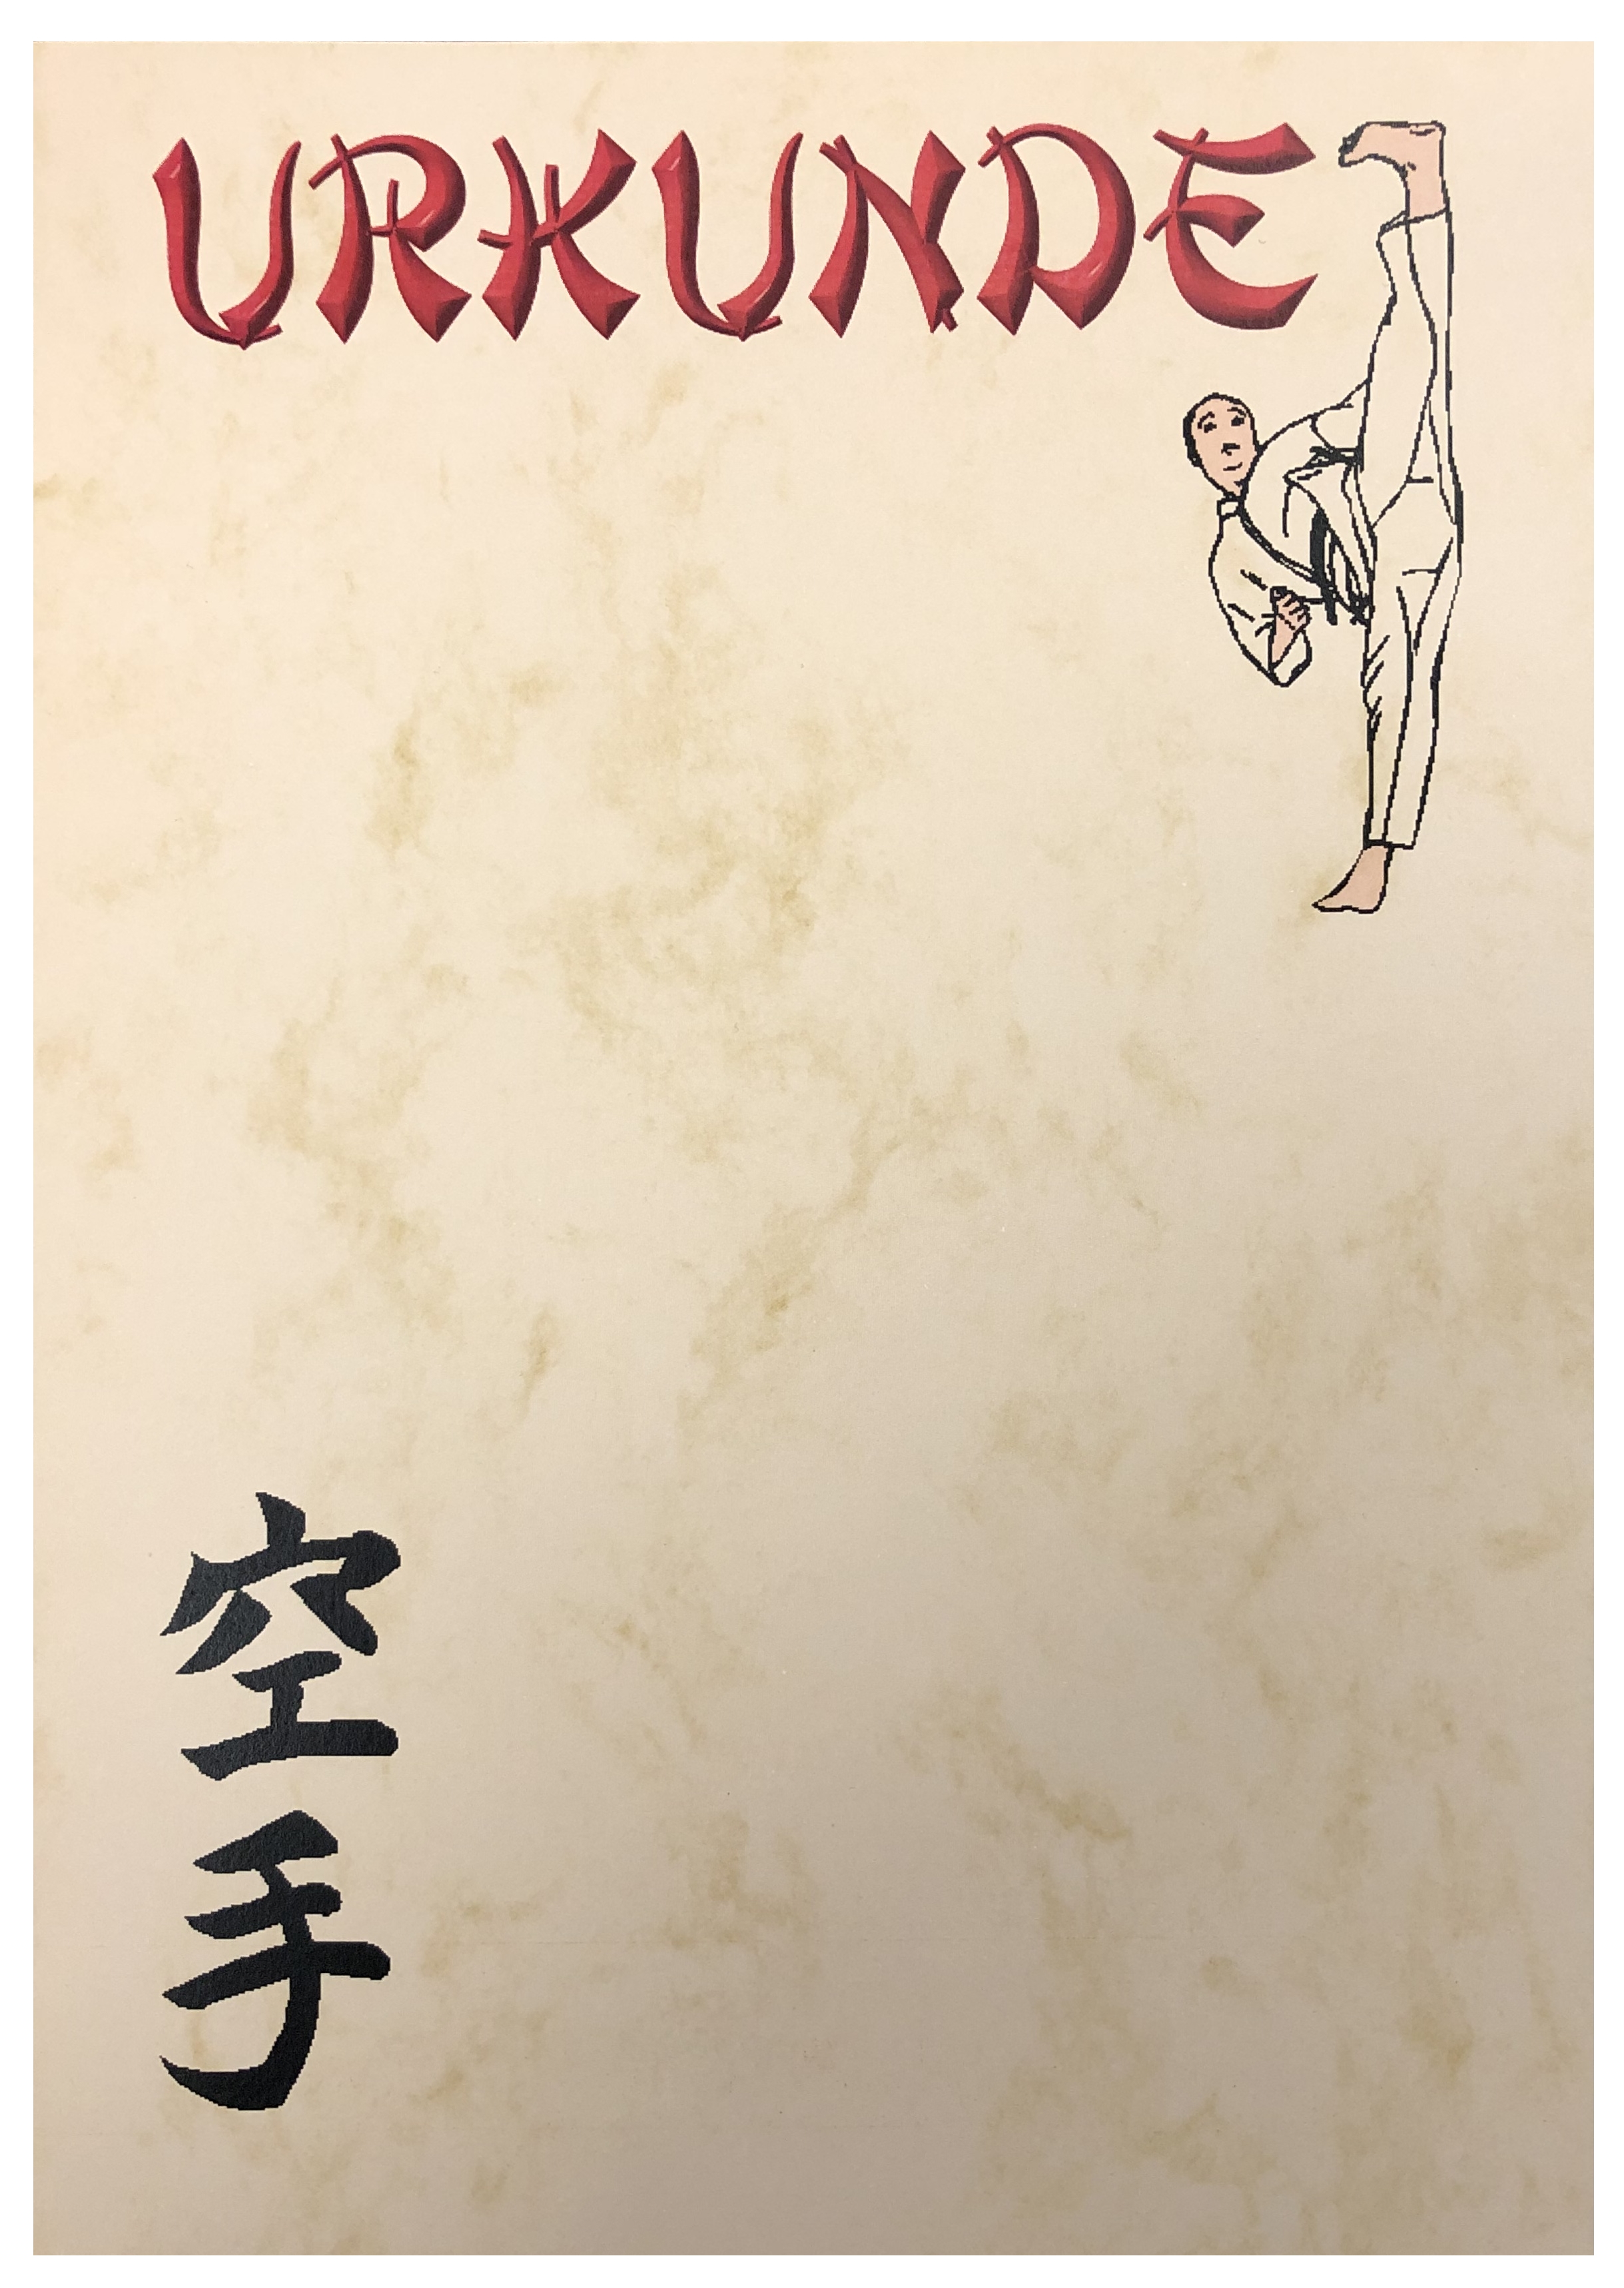 Urkunde Karate